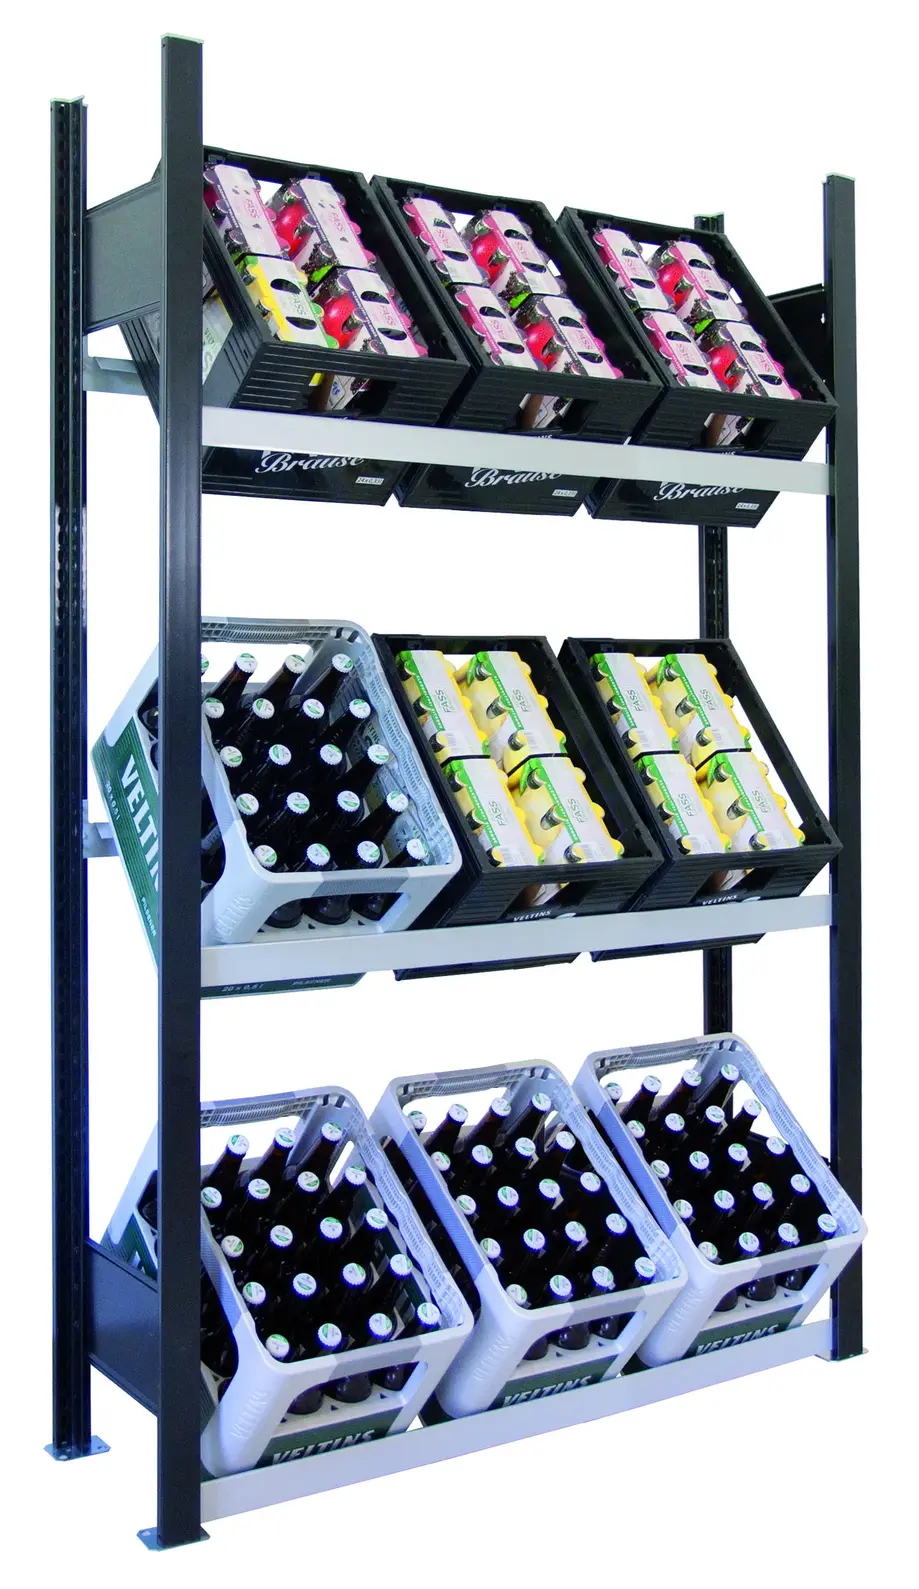 Getränkekistenregal für bis zu 9 Kisten, 180x100x30 cm (HxBxT), Traglast pro Ebene 60 Kg, schwarz-silber